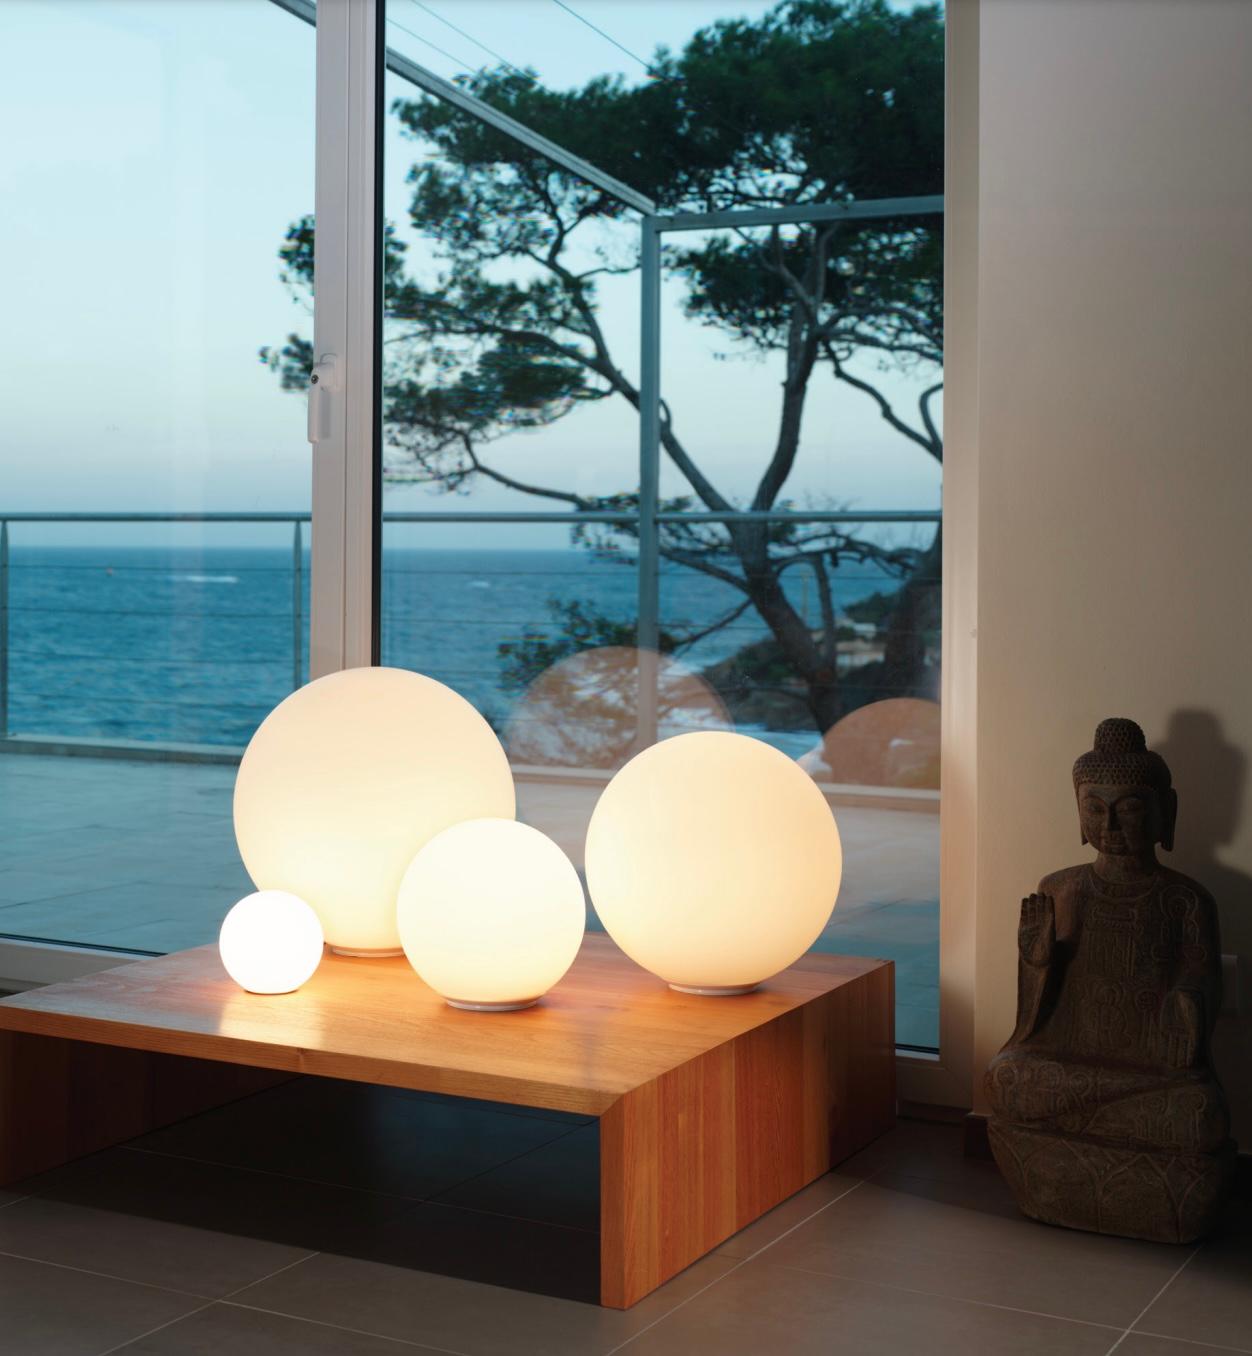 Très grande lampe de table 'Dioscuri 42' de Michele De Lucchi pour Artemide. 

Dioscuri' est un luminaire intemporel qui diffuse une lumière céleste. Cette lampe polyvalente présente un design minimaliste qui transcende le temps par son charme.